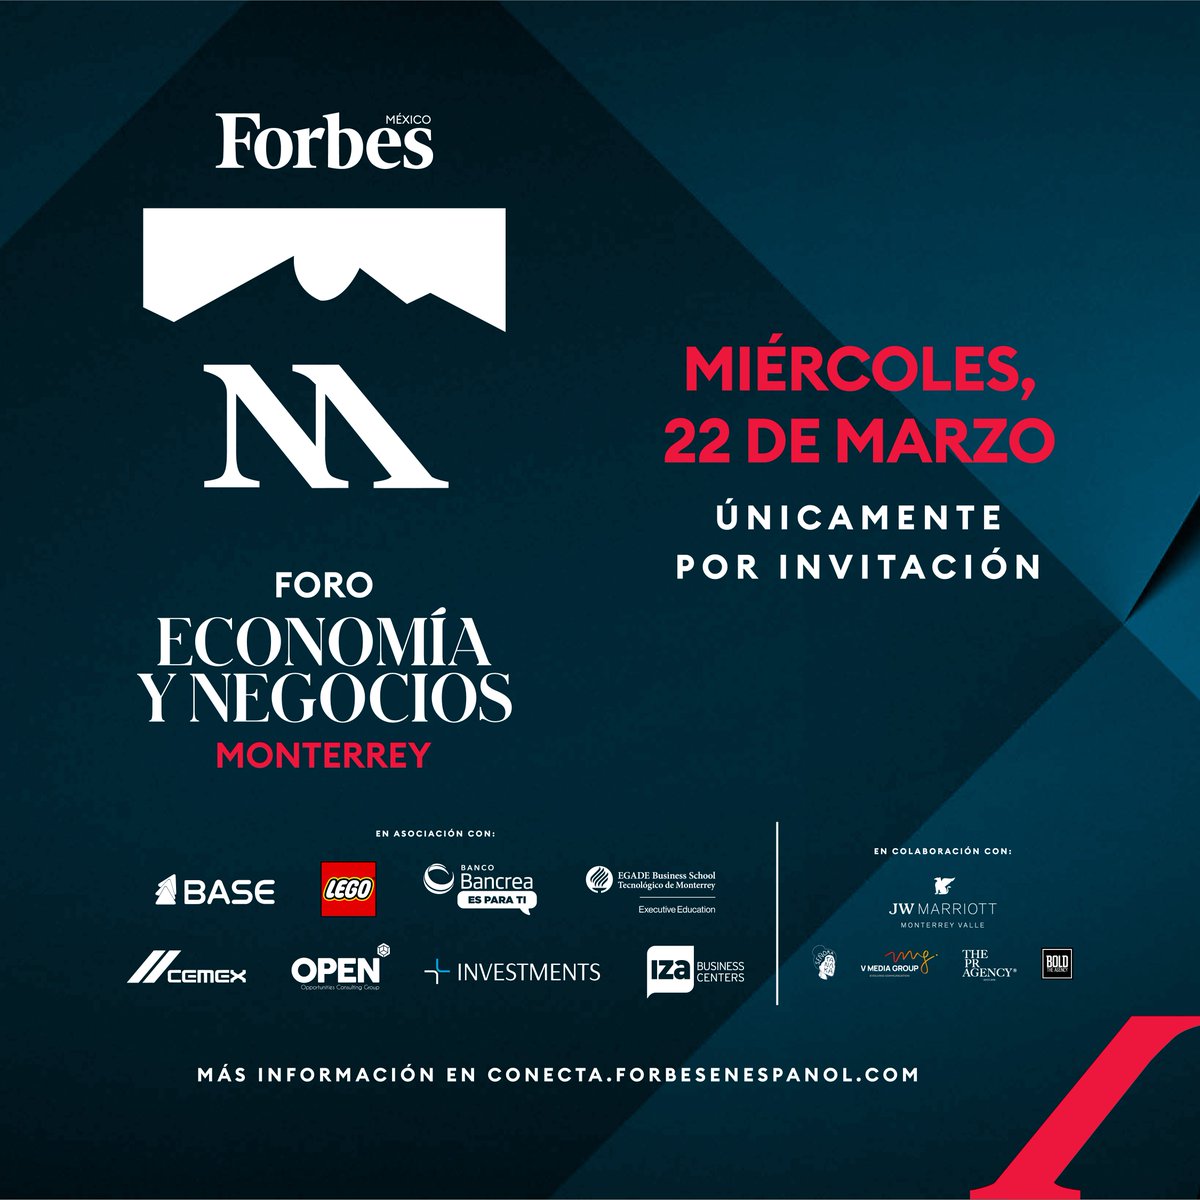 Este miércoles 22 de marzo se llevará a cabo el Foro Forbes de Economía y Negocios Monterrey. 

Todos los detalles del evento ➡ bit.ly/40sLfZ0
#MTYECONOMÍAYNEGOCIOS #FOROFORBES